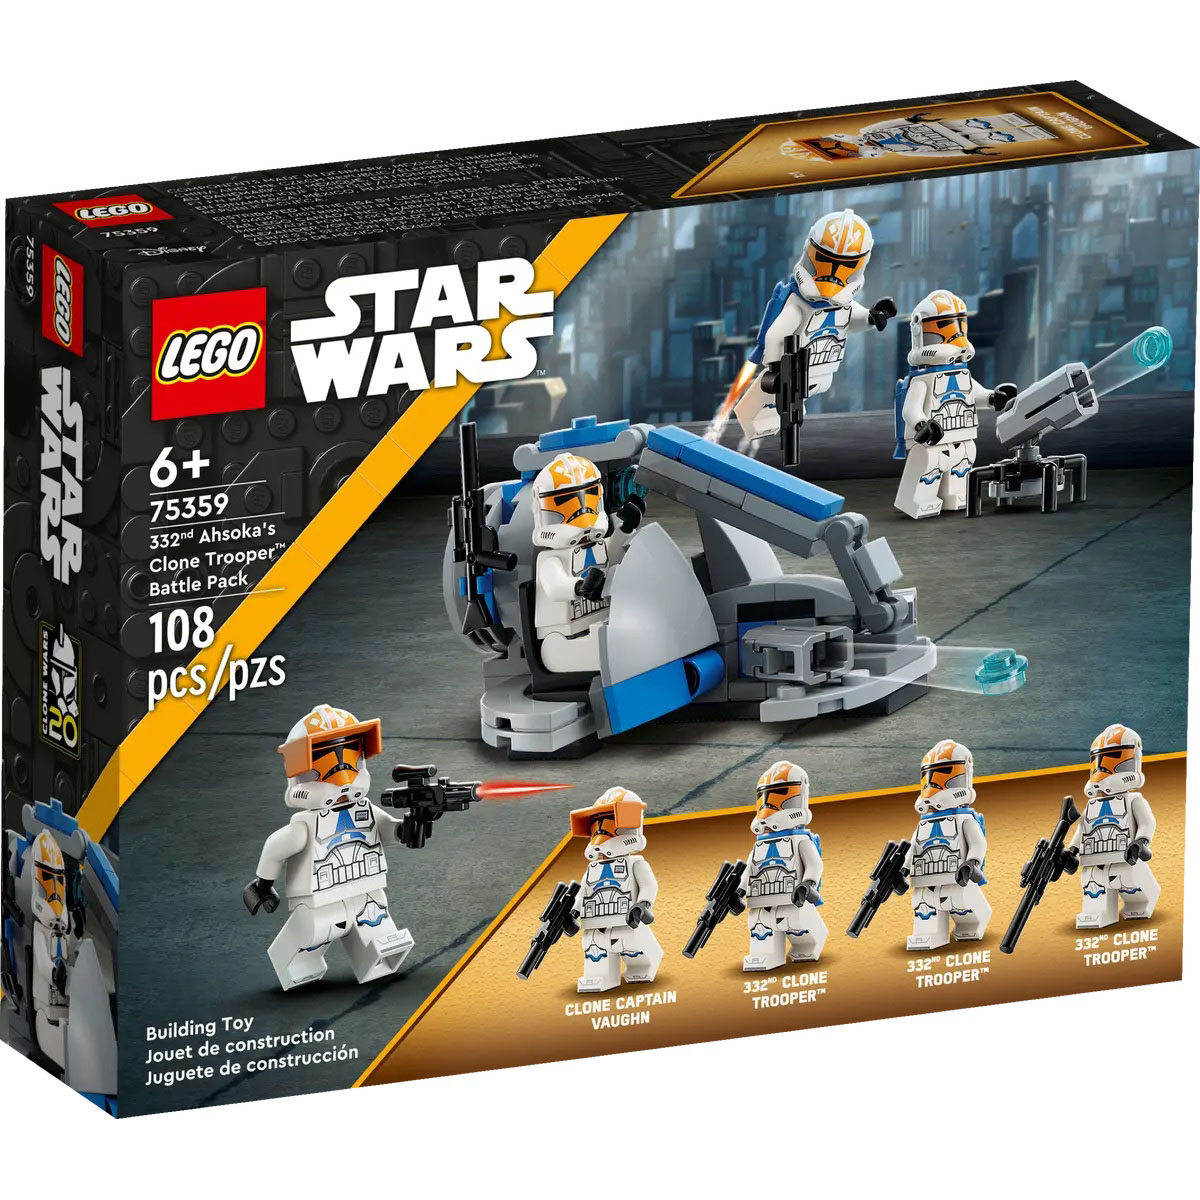 LEGO(R) Star Wars(R) 332nd Ahsoka's Clone Trooper(tm) Battle Pack